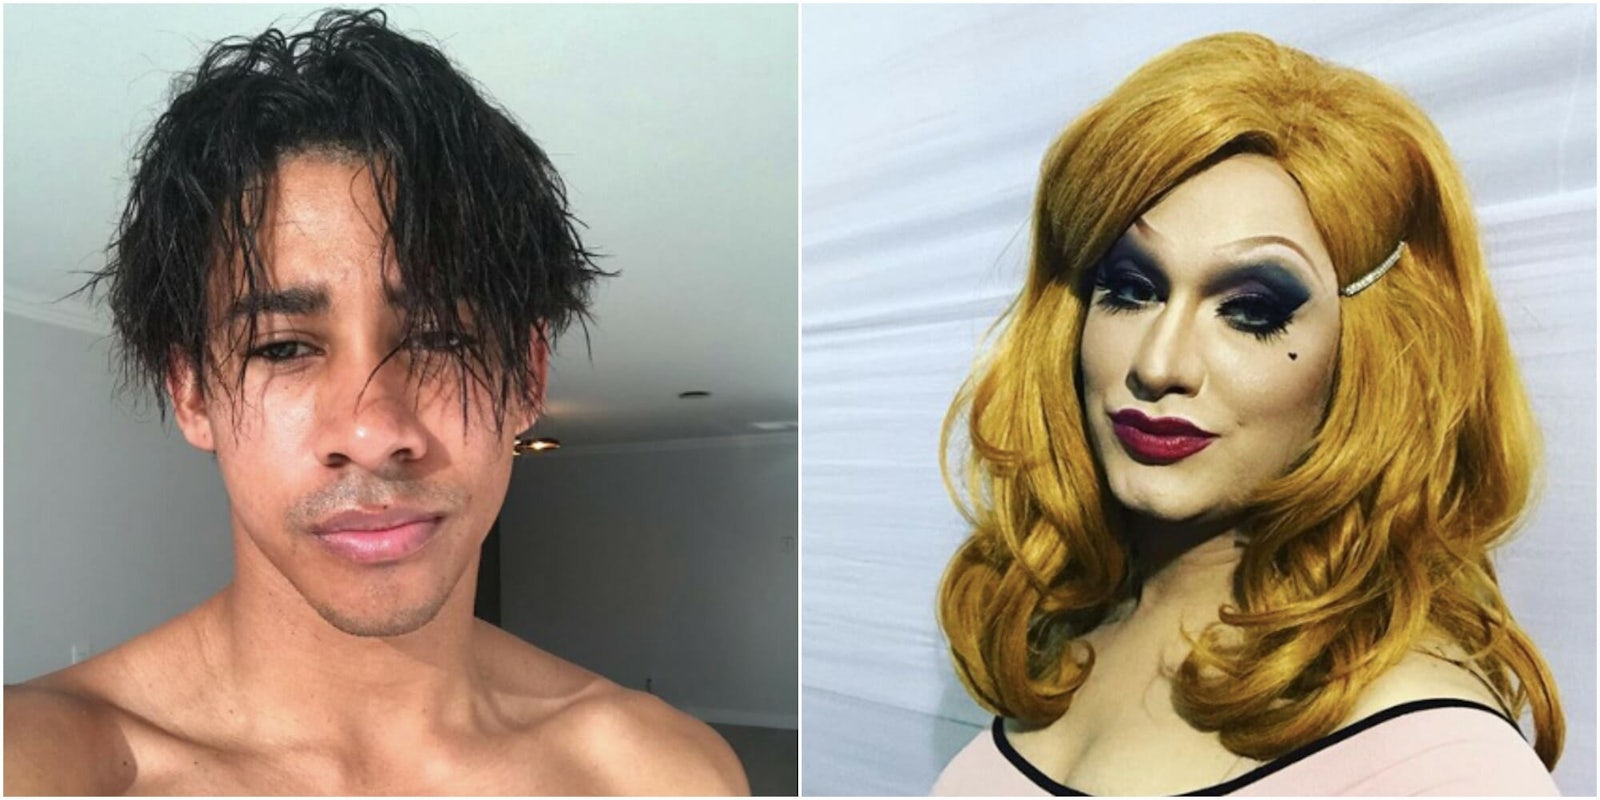 Jinkx Monsoon Keiynan Lonsdale queer celebrity sex